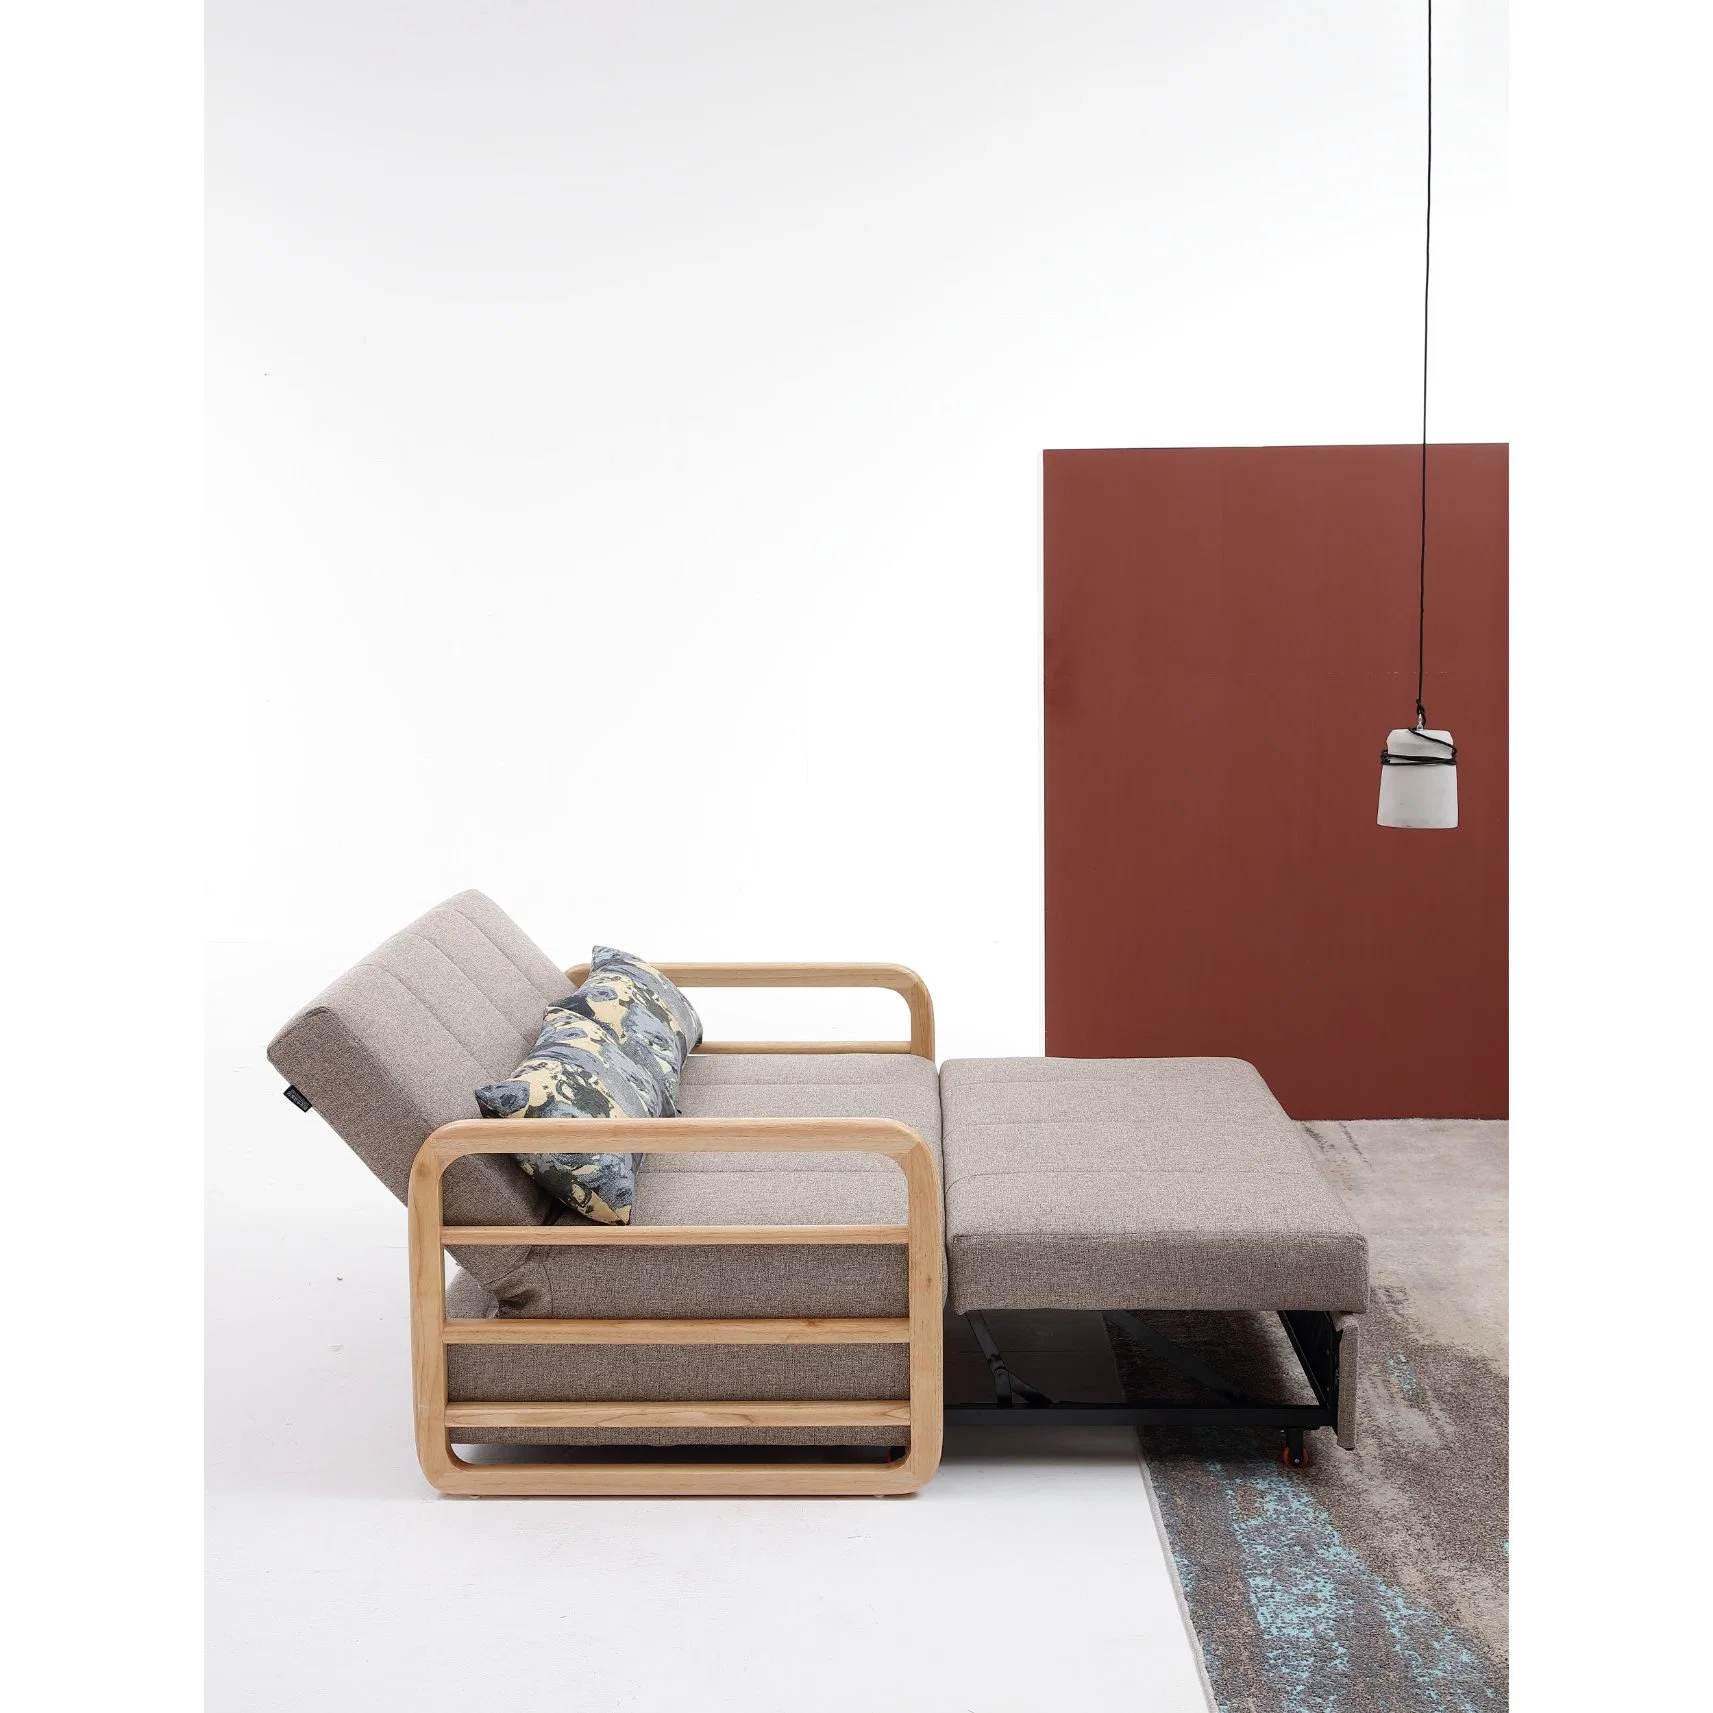 سوق الجملة أثاث شيسترفيلد غرفة معيشة ترفيهية بسيطة حديثة مع سرير أريكة يمكن طيه وسرير